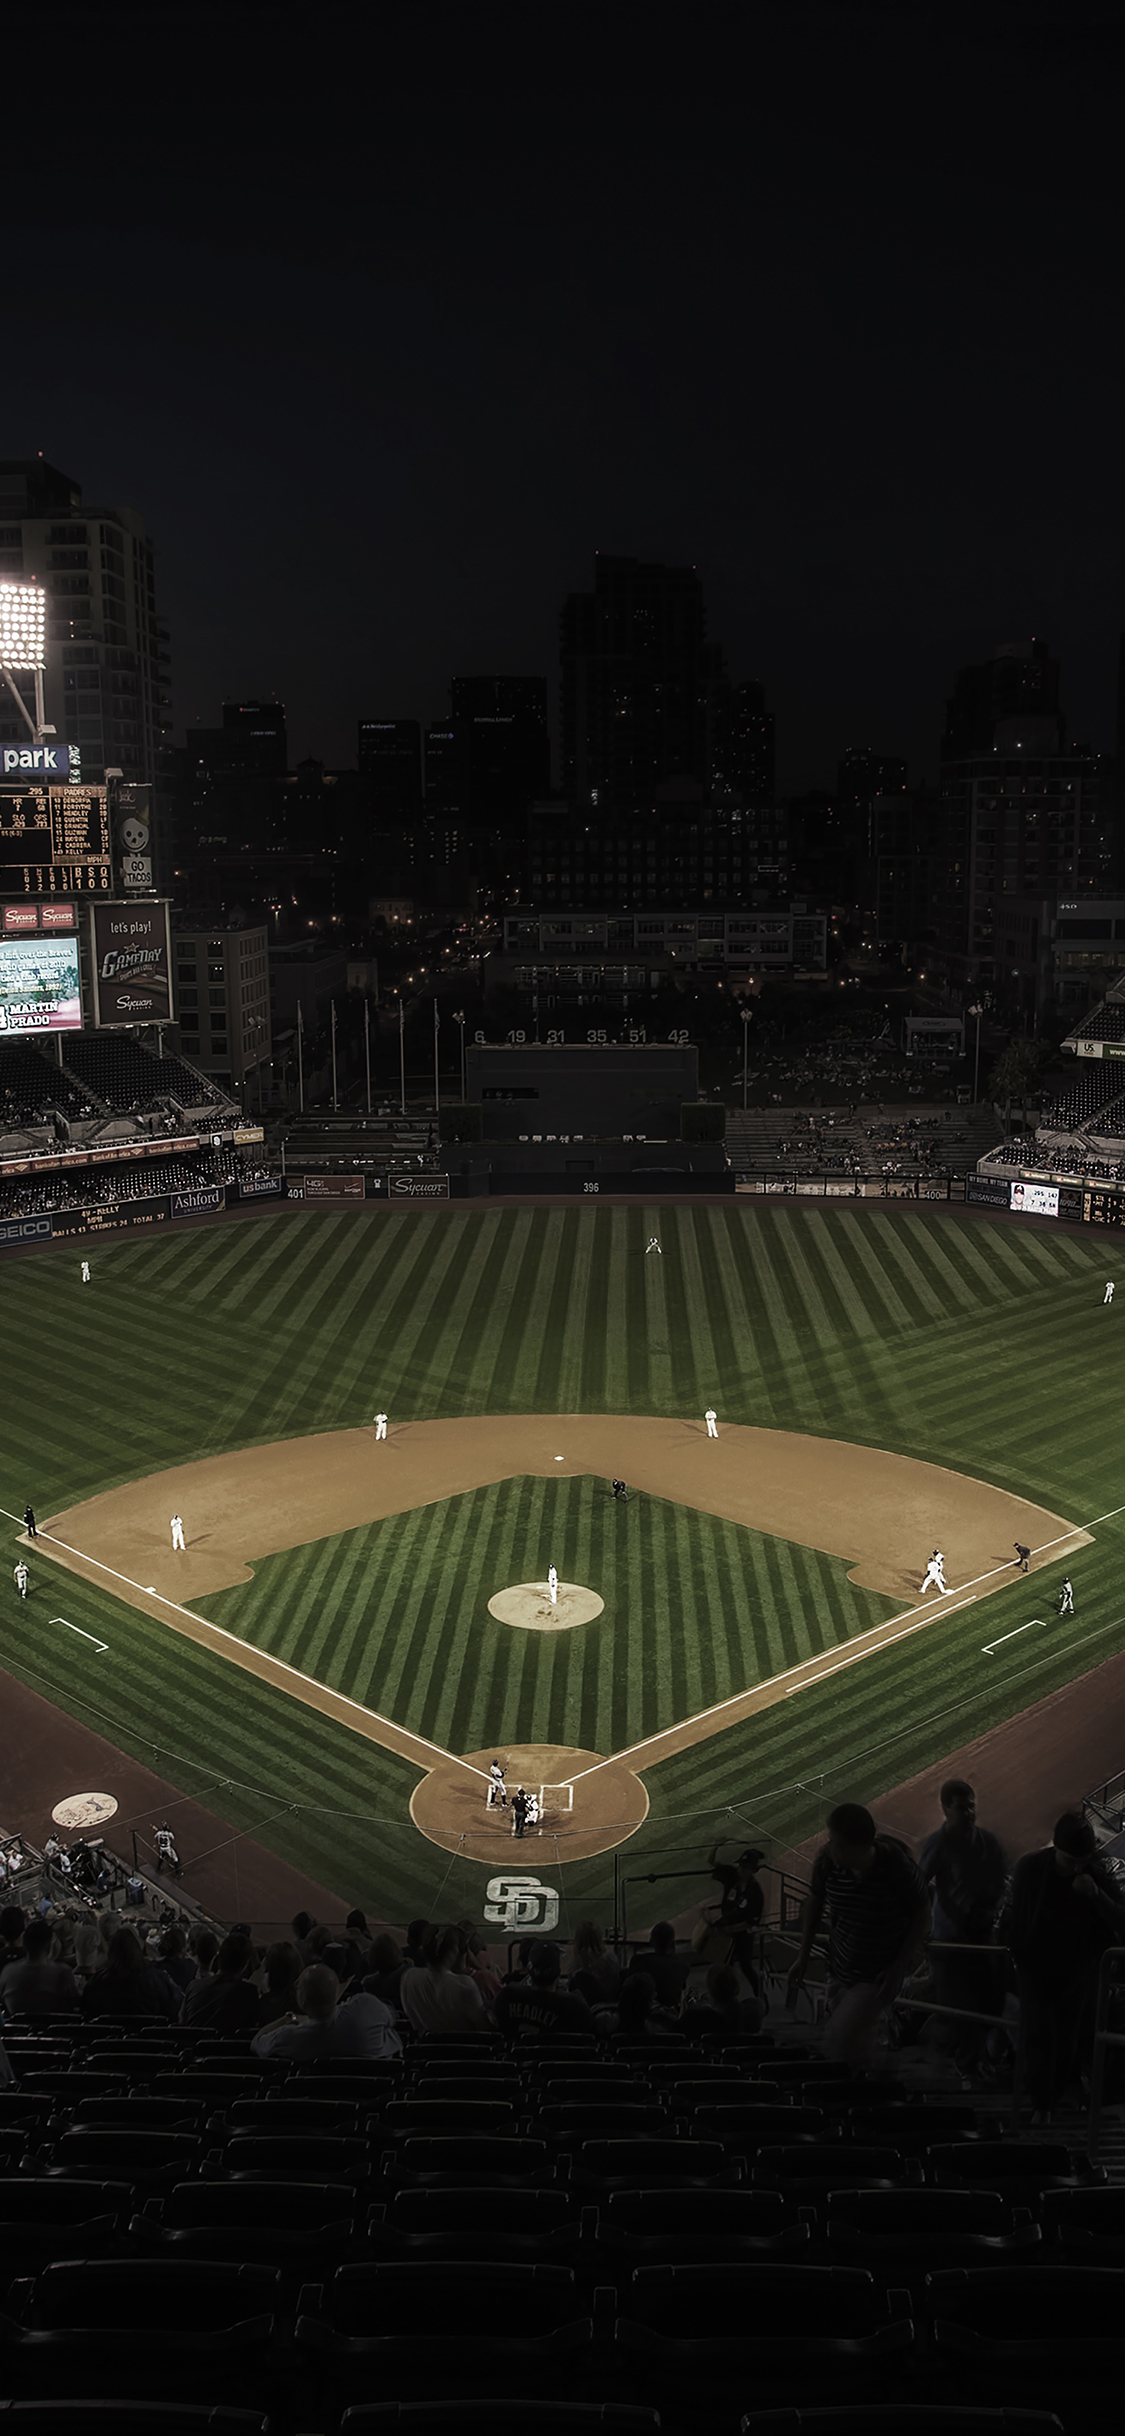 baseball field at night wallpaper